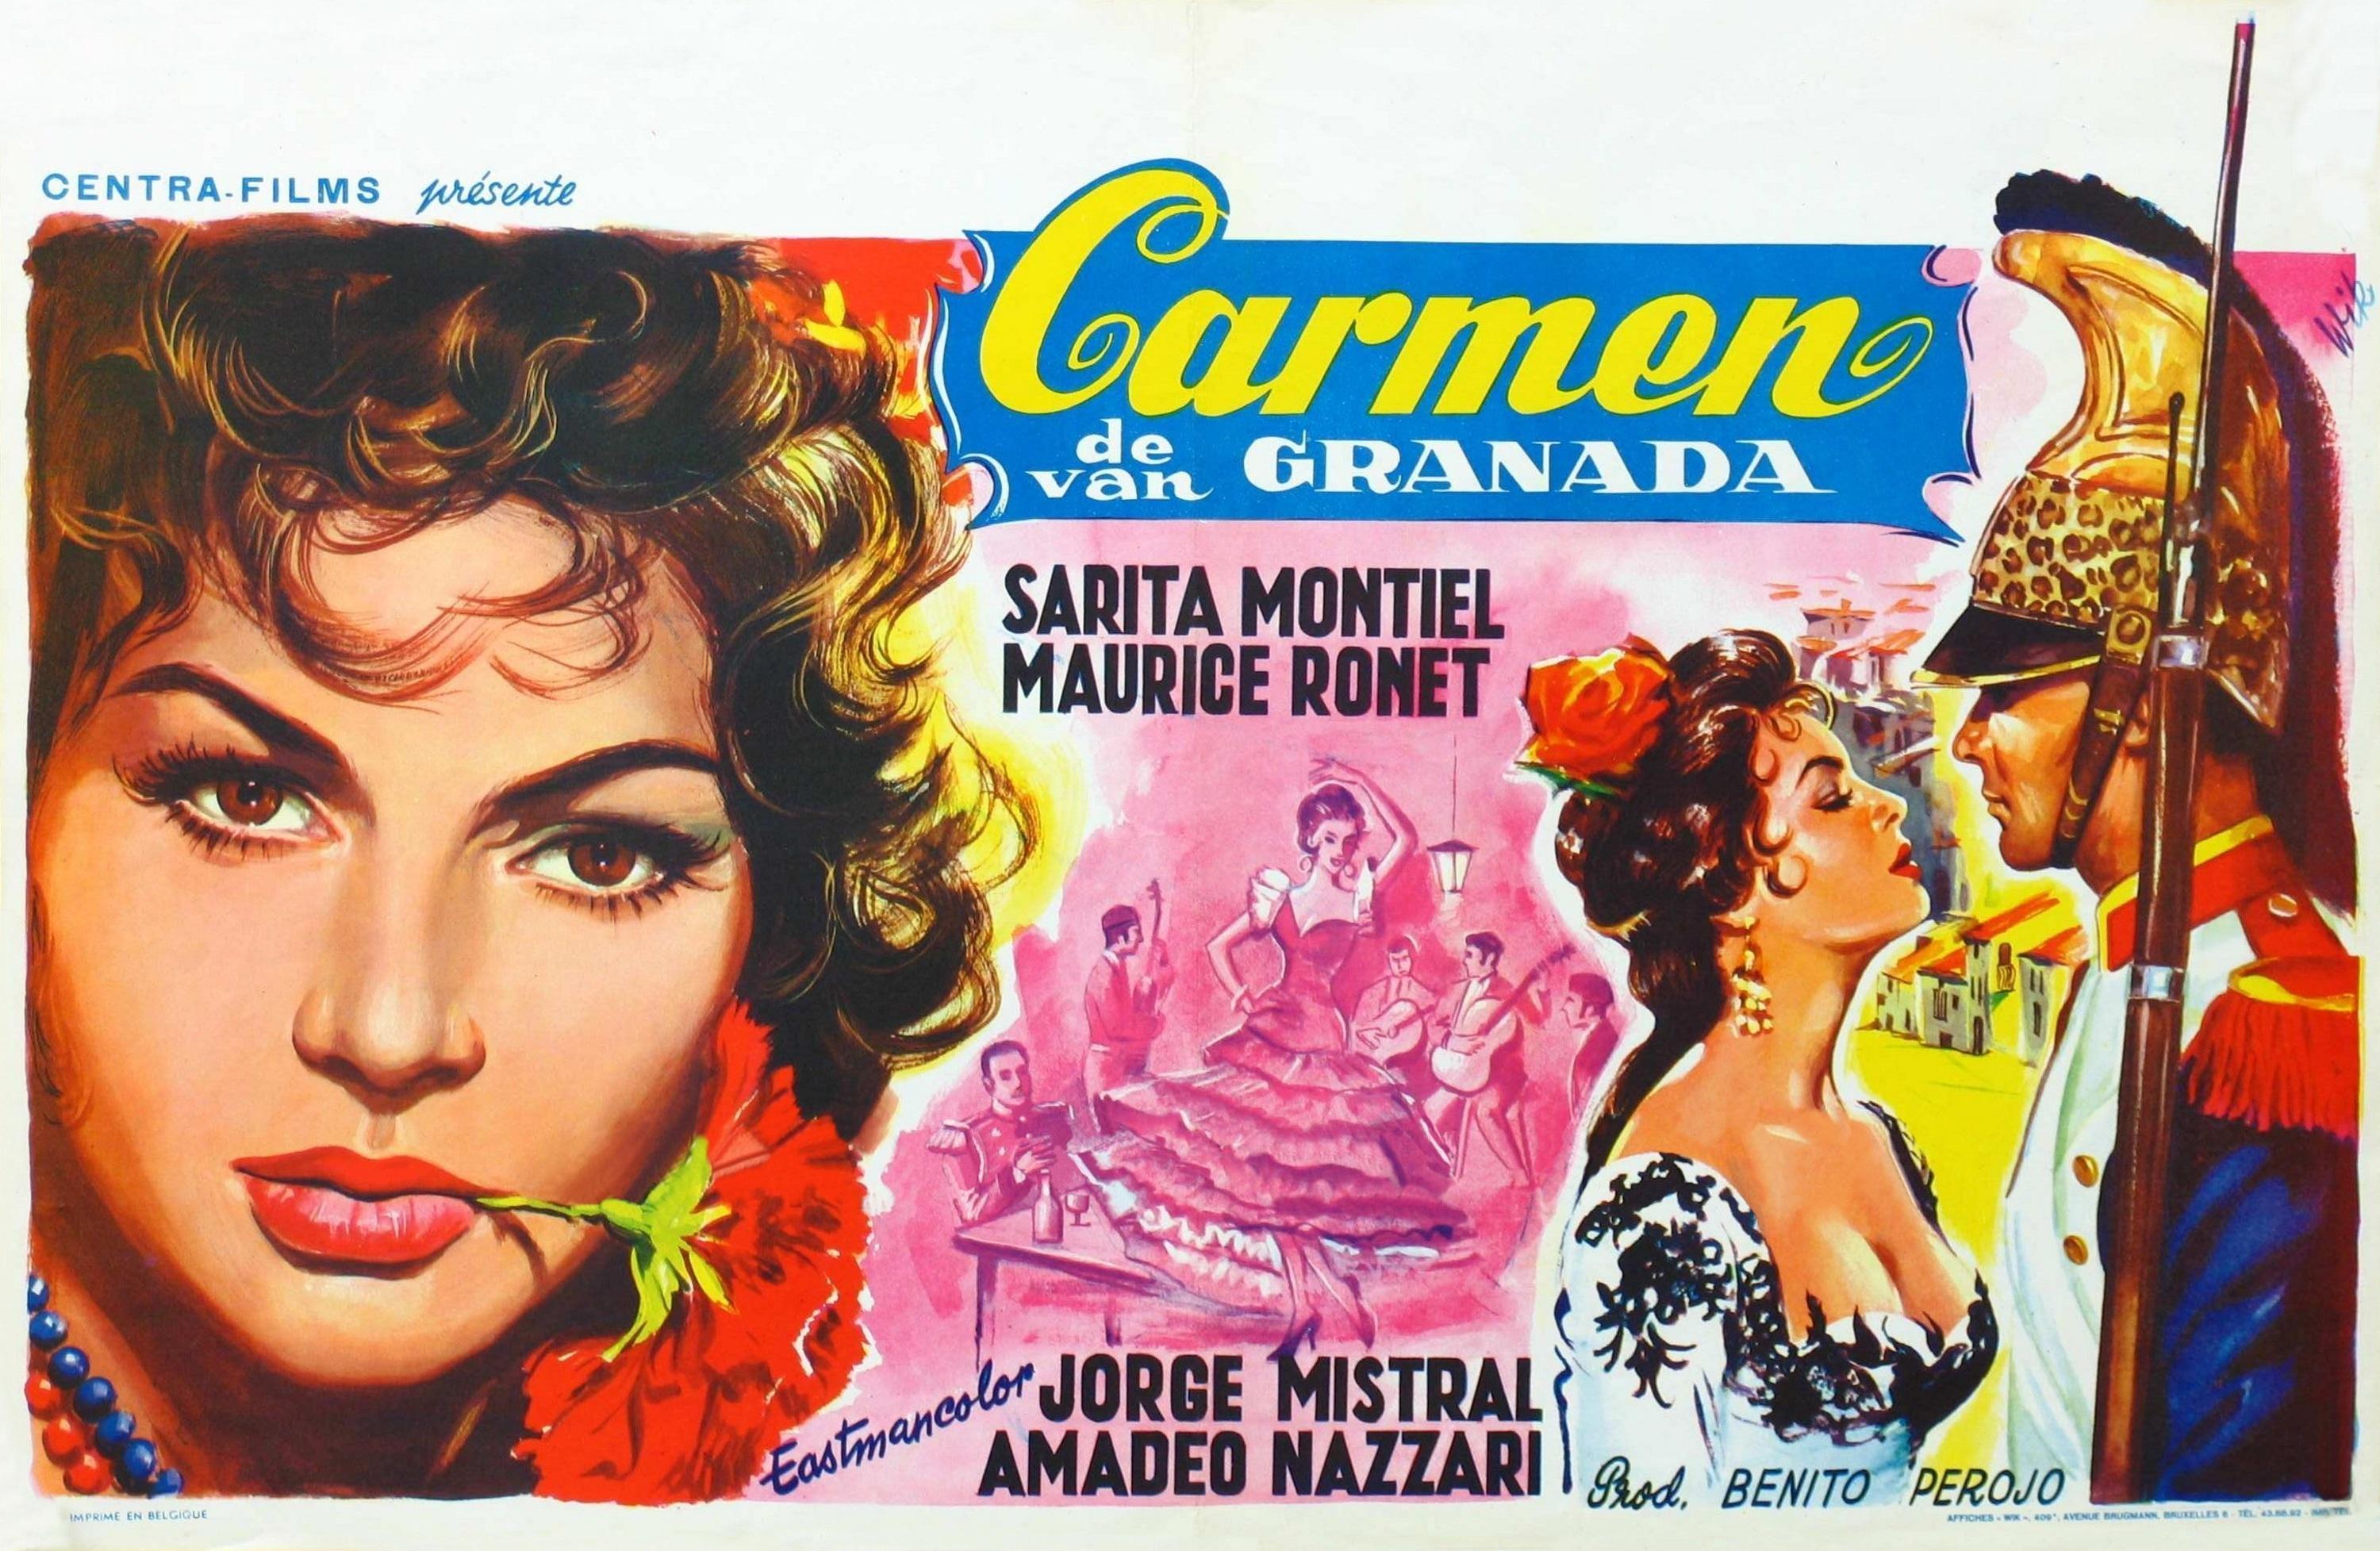 Постер фильма Кармен из Гренады | Carmen la de Ronda